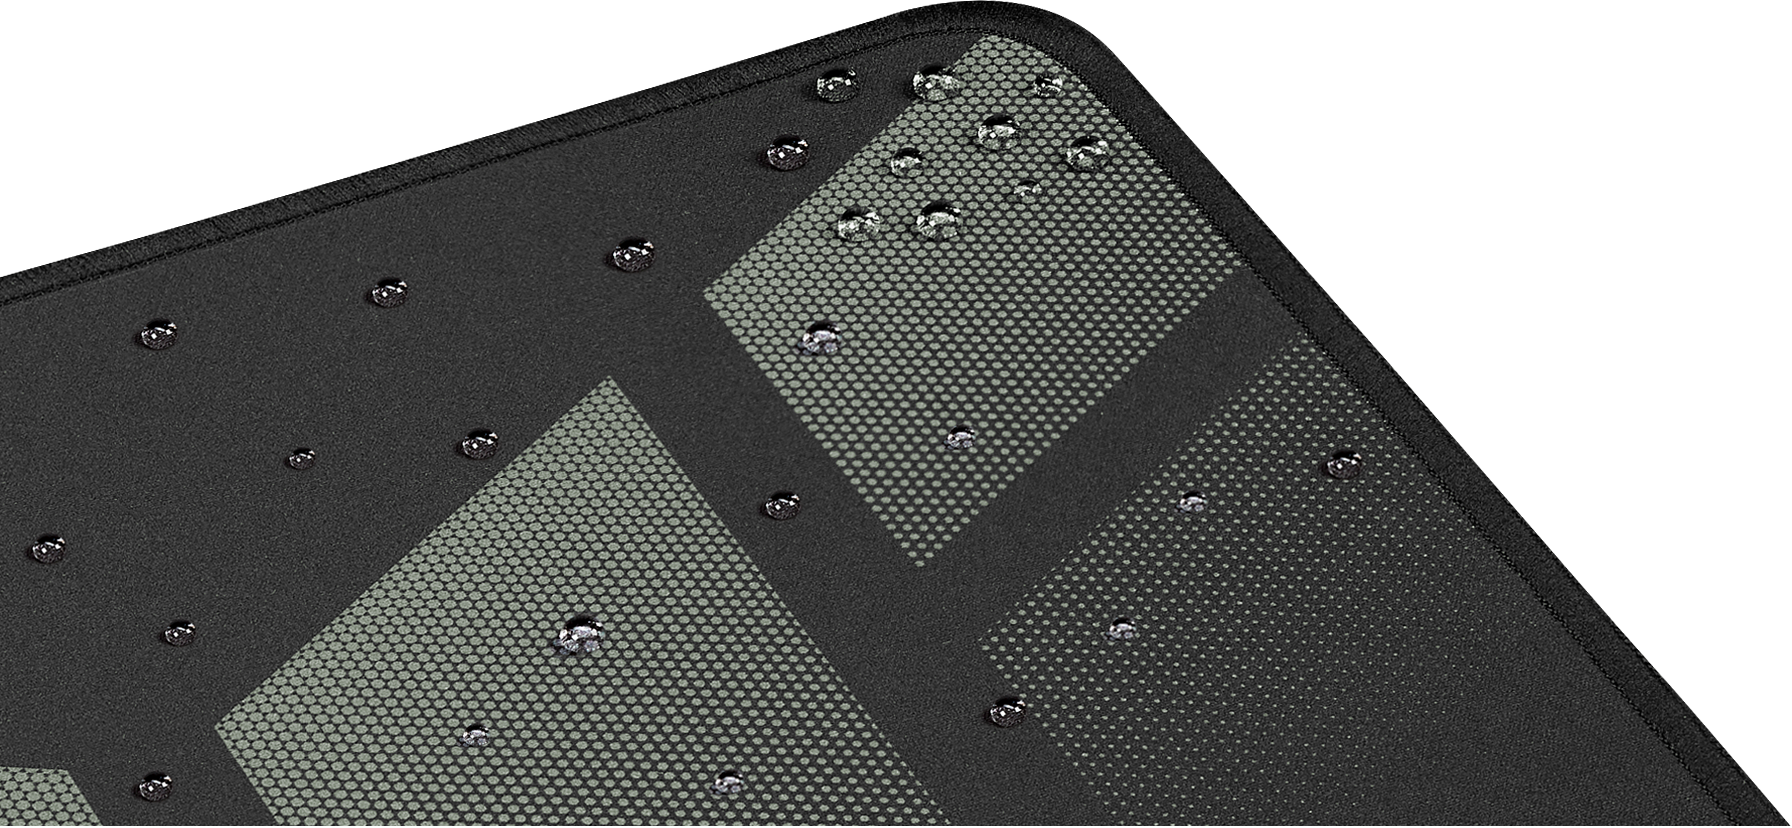 Herná podložka Asus TUF Gaming P1 je vyrobená z odolnej tkaniny s inovatívnym nano poťahom vojenskej kvality, ktorý odpudzuje vodu a vlhkosť.